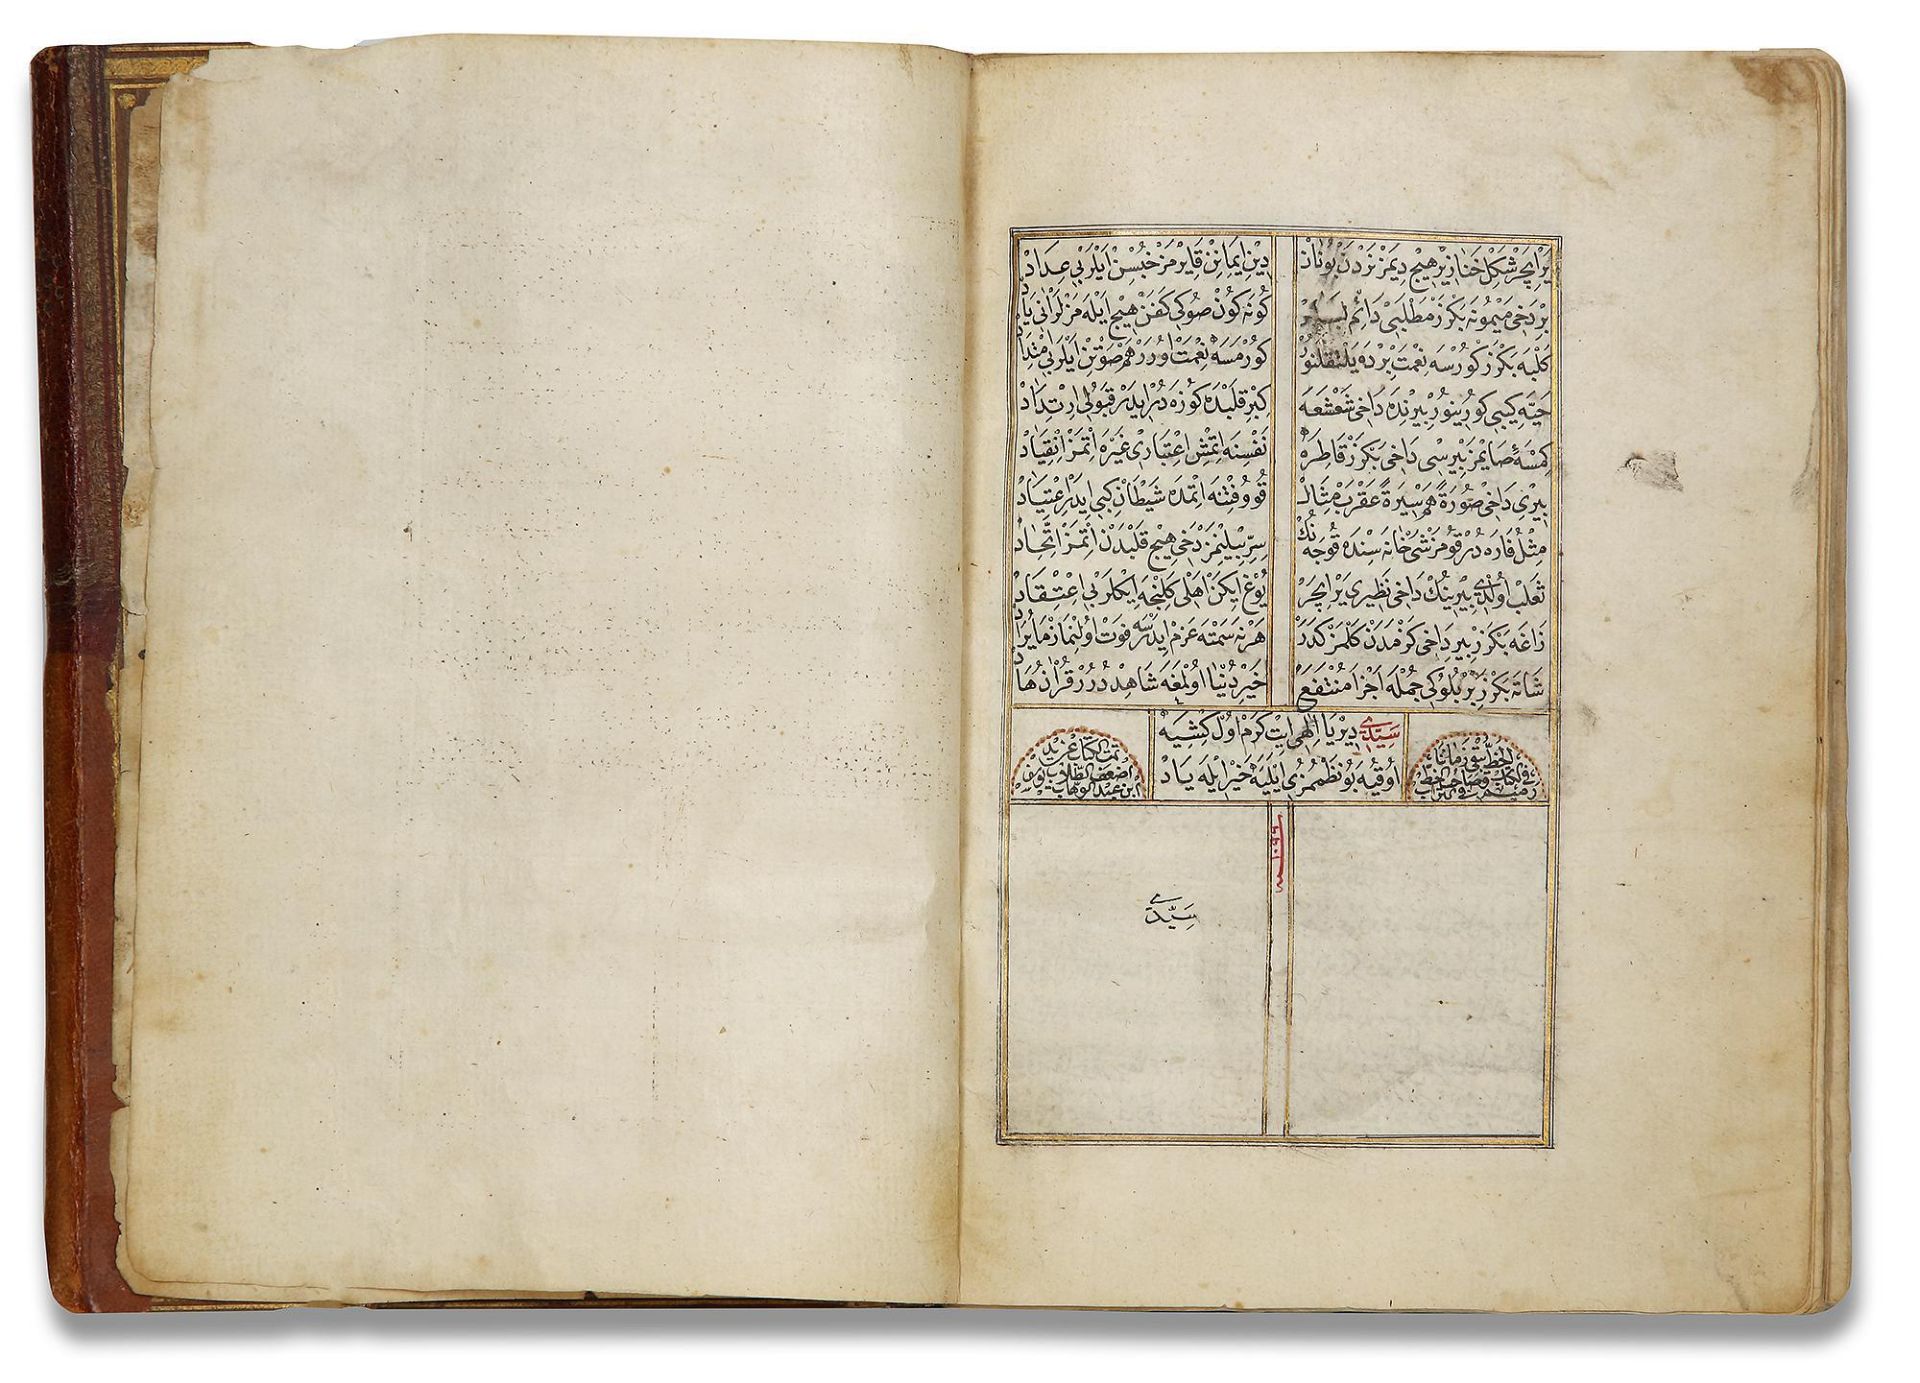 AN OTTOMAN MANUSCRIPT COPIED BY YUSUF IBN ABD AL-WAHHAB 1099 AH/1688 AD - Image 10 of 16